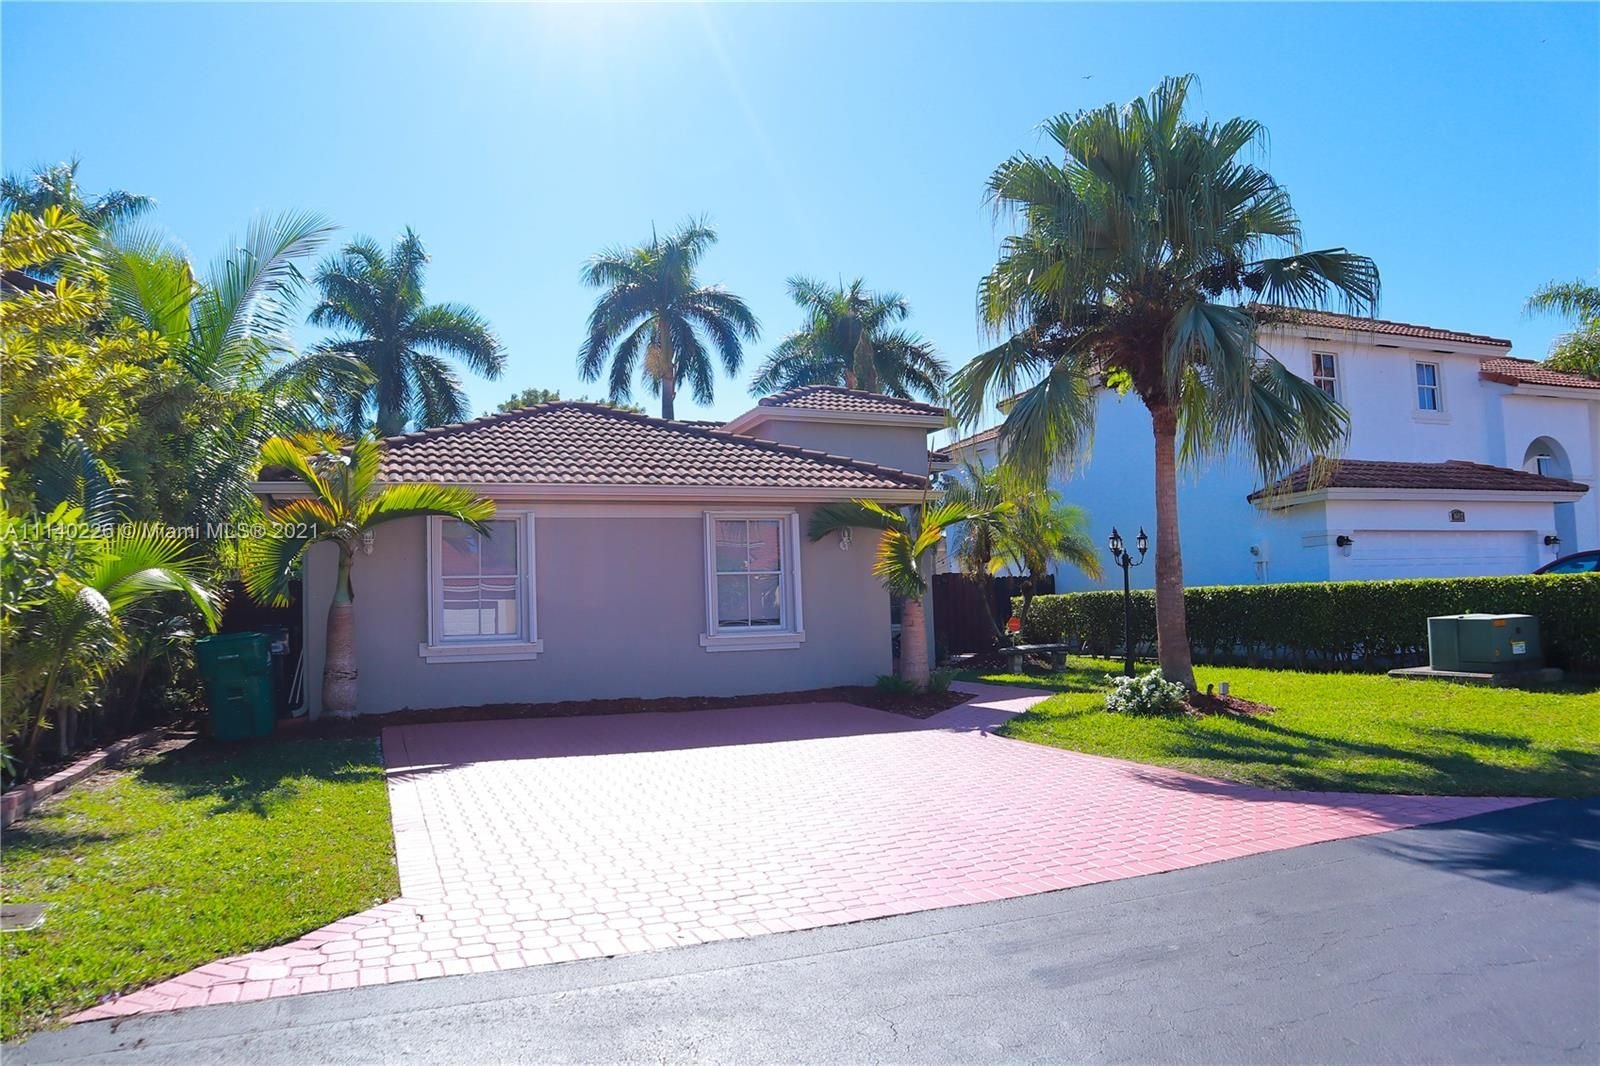 Real estate property located at 16404 95th Ln, Miami-Dade County, Miami, FL